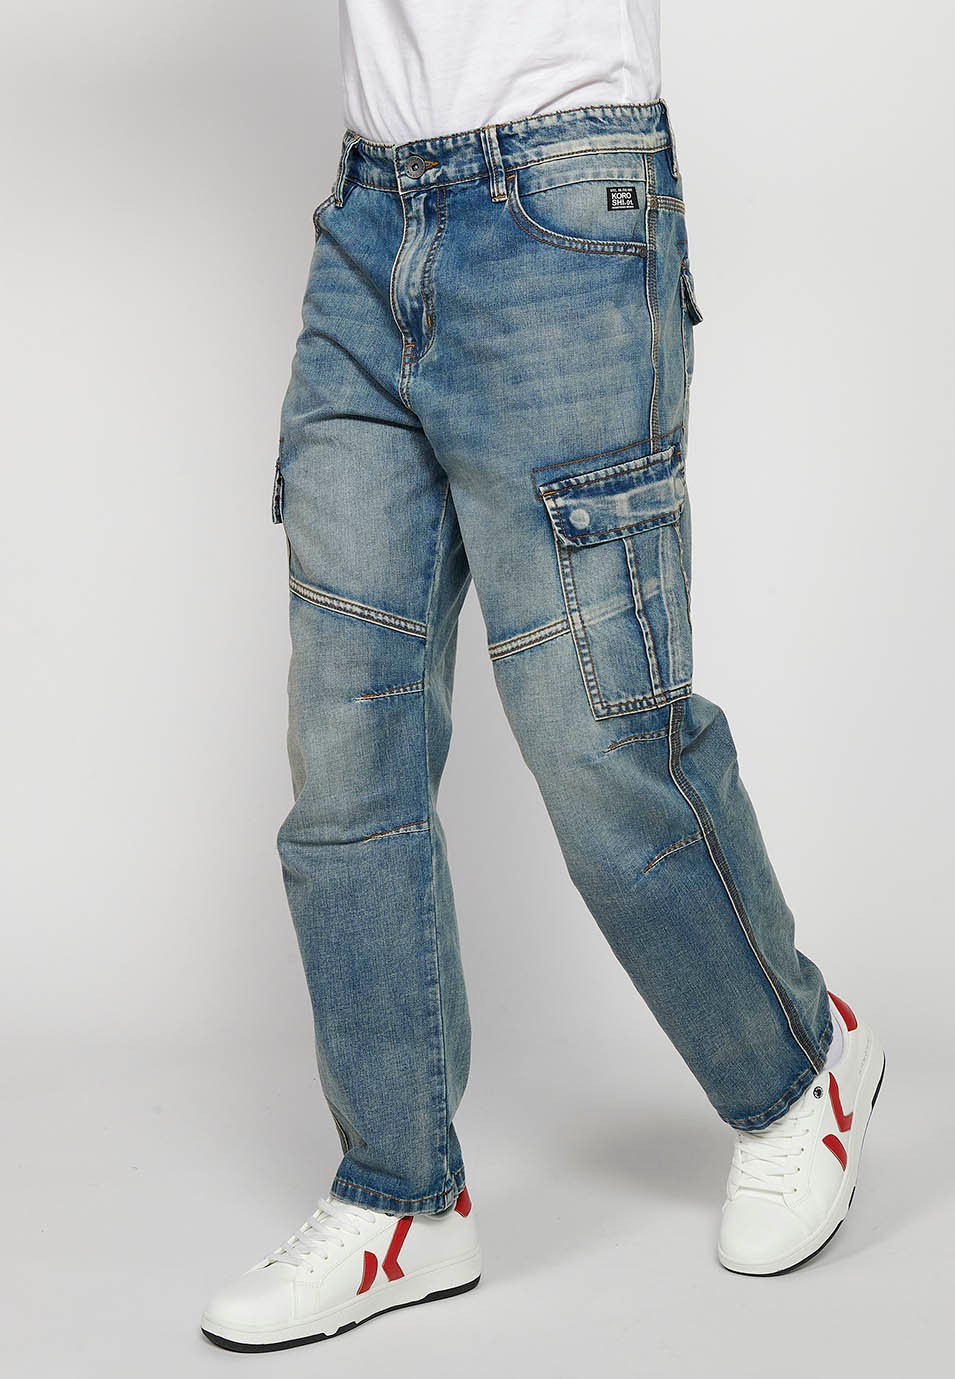 Pantalons càrrec llarg amb Tancament davanter amb cremallera i botó amb Butxaques laterals amb solapa de Color Blau per a Home 4